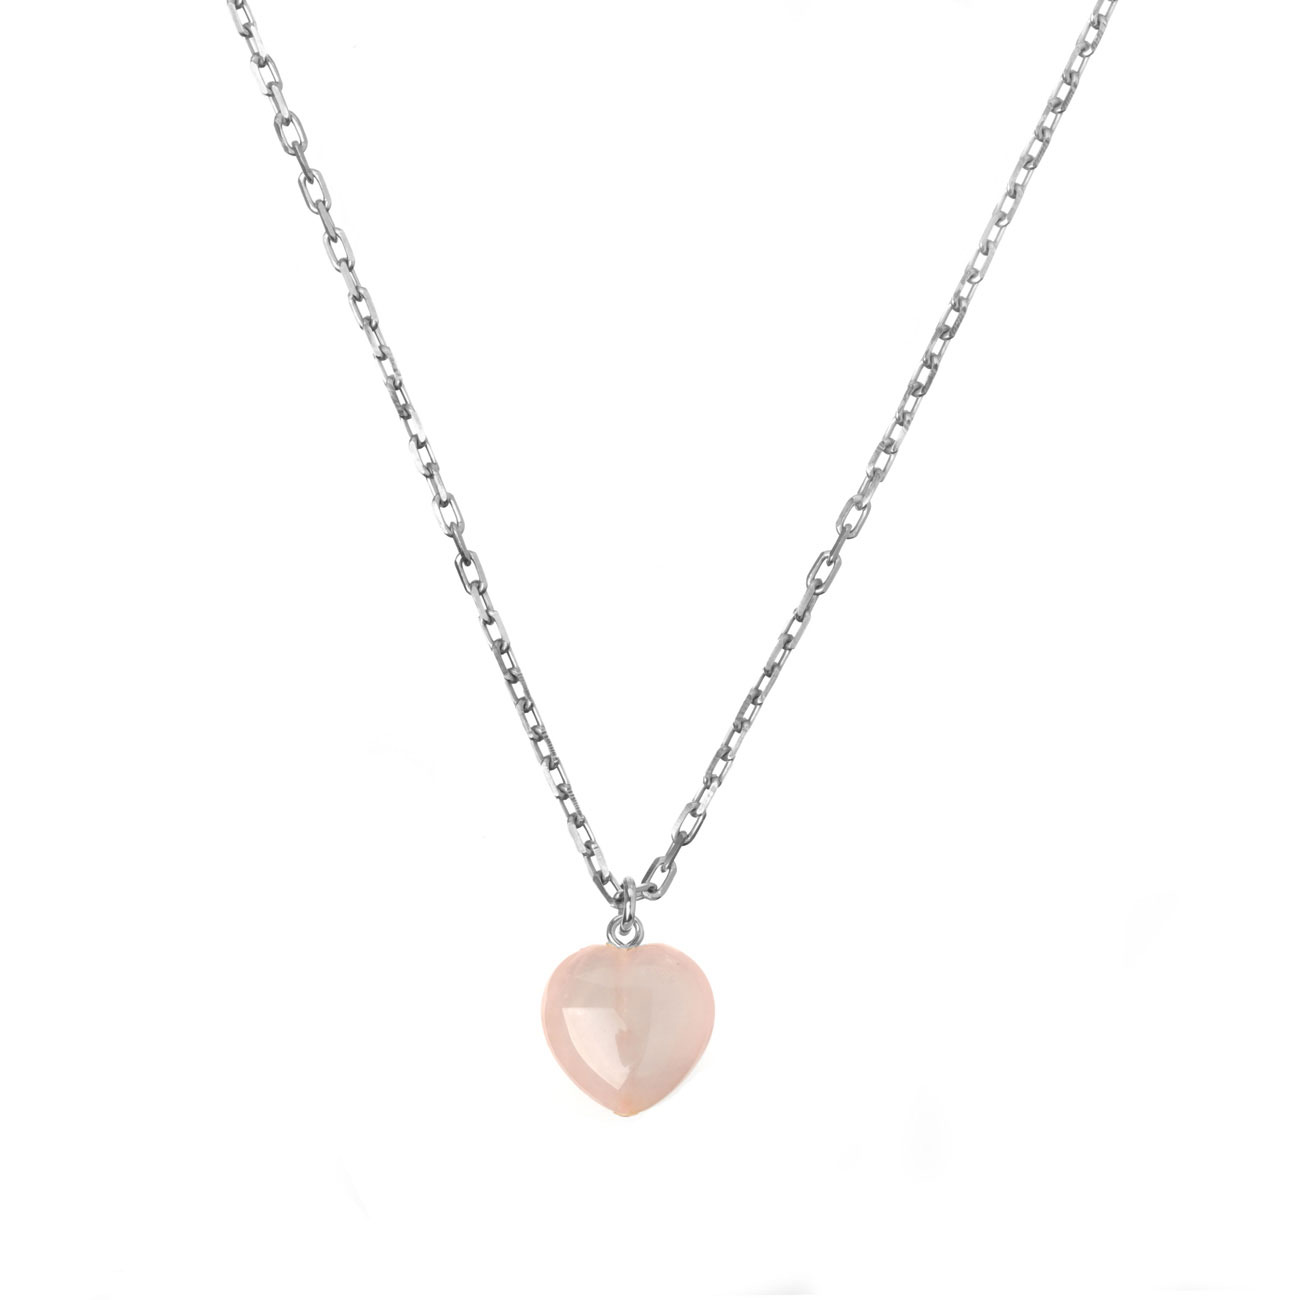 metaformi_design_jewelry_guilty_pleasures_big_silver_heart_necklace